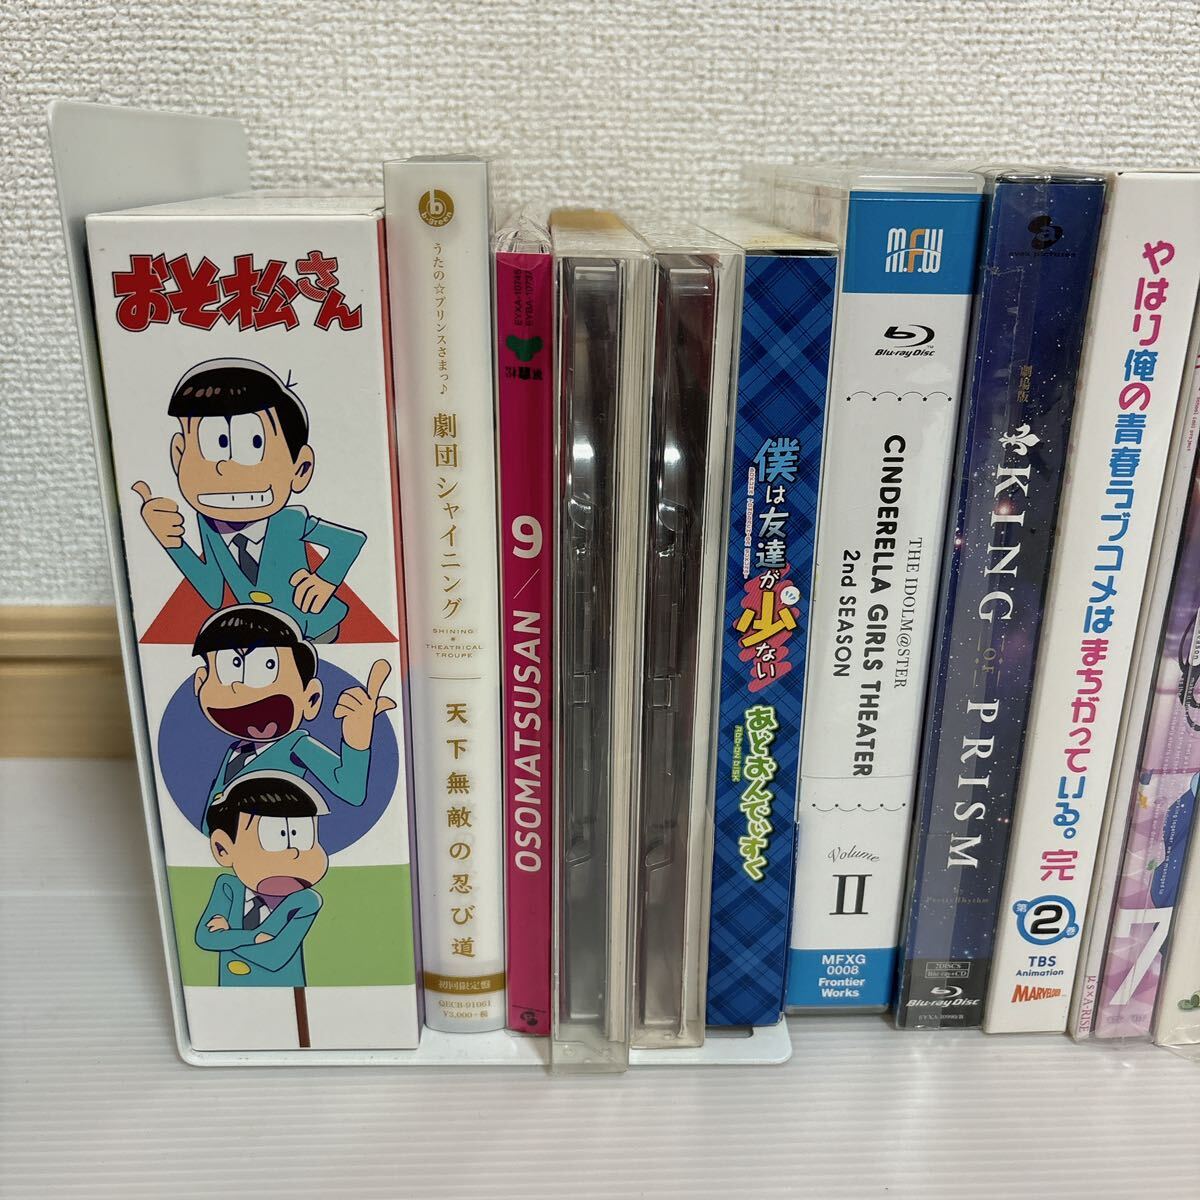  не осмотр товар аниме DVD много продажа комплектом Mr. Osomatsu Rav Live! и т.п. много продажа комплектом A-529